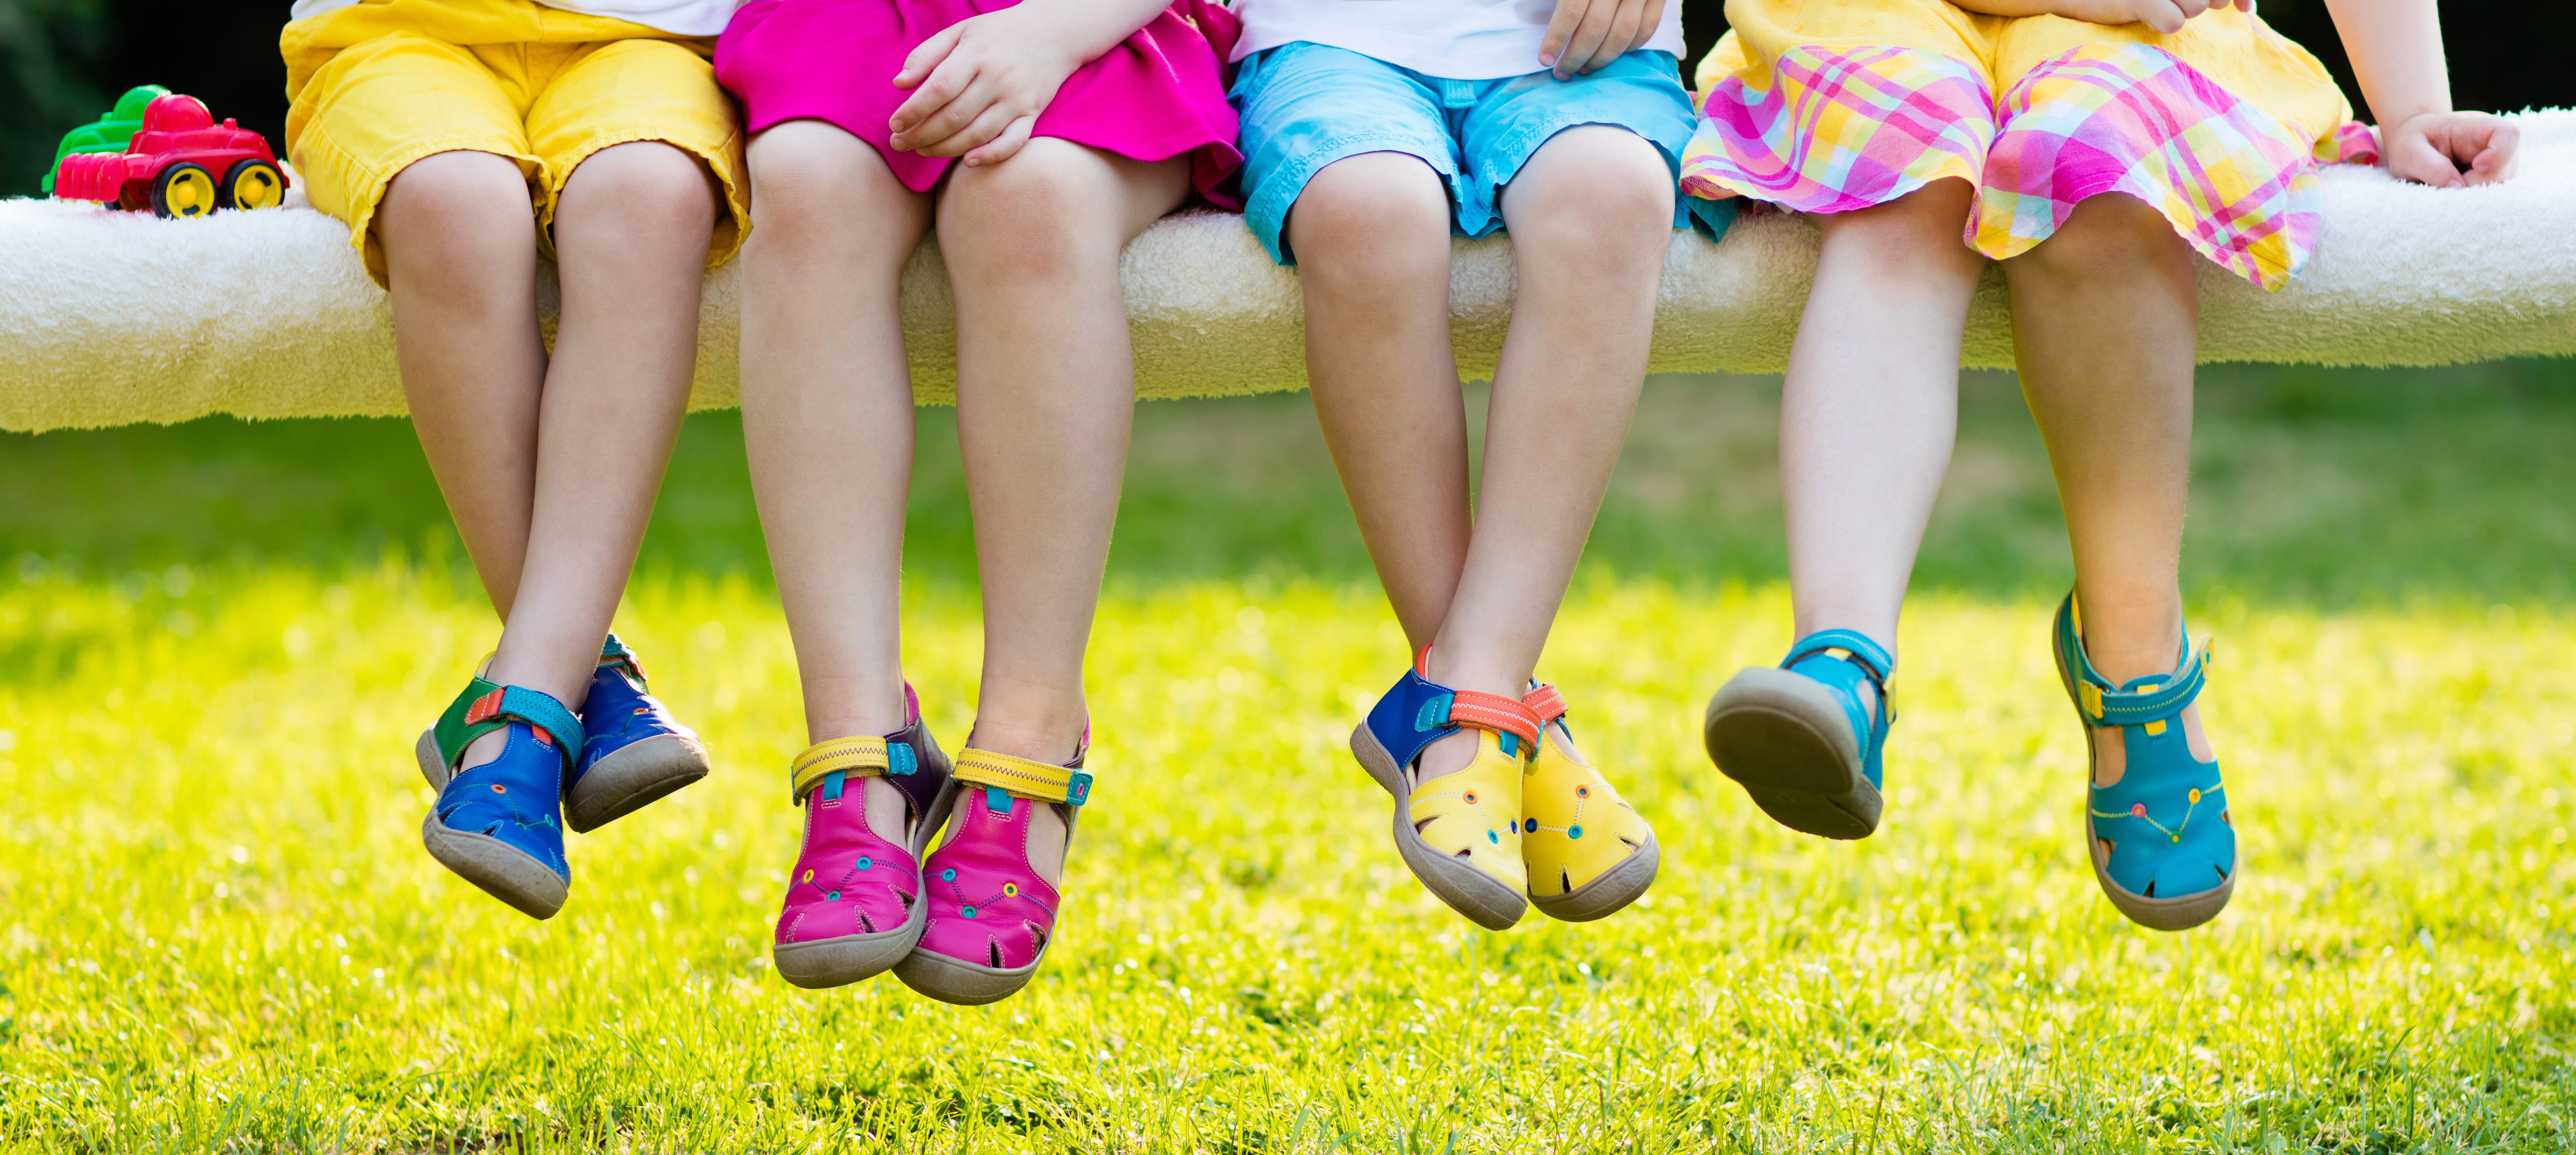 На первое время ребенку летом. Детская обувь. Детские ноги в обуви. Детская обувь летом. Дети в обуви летом.